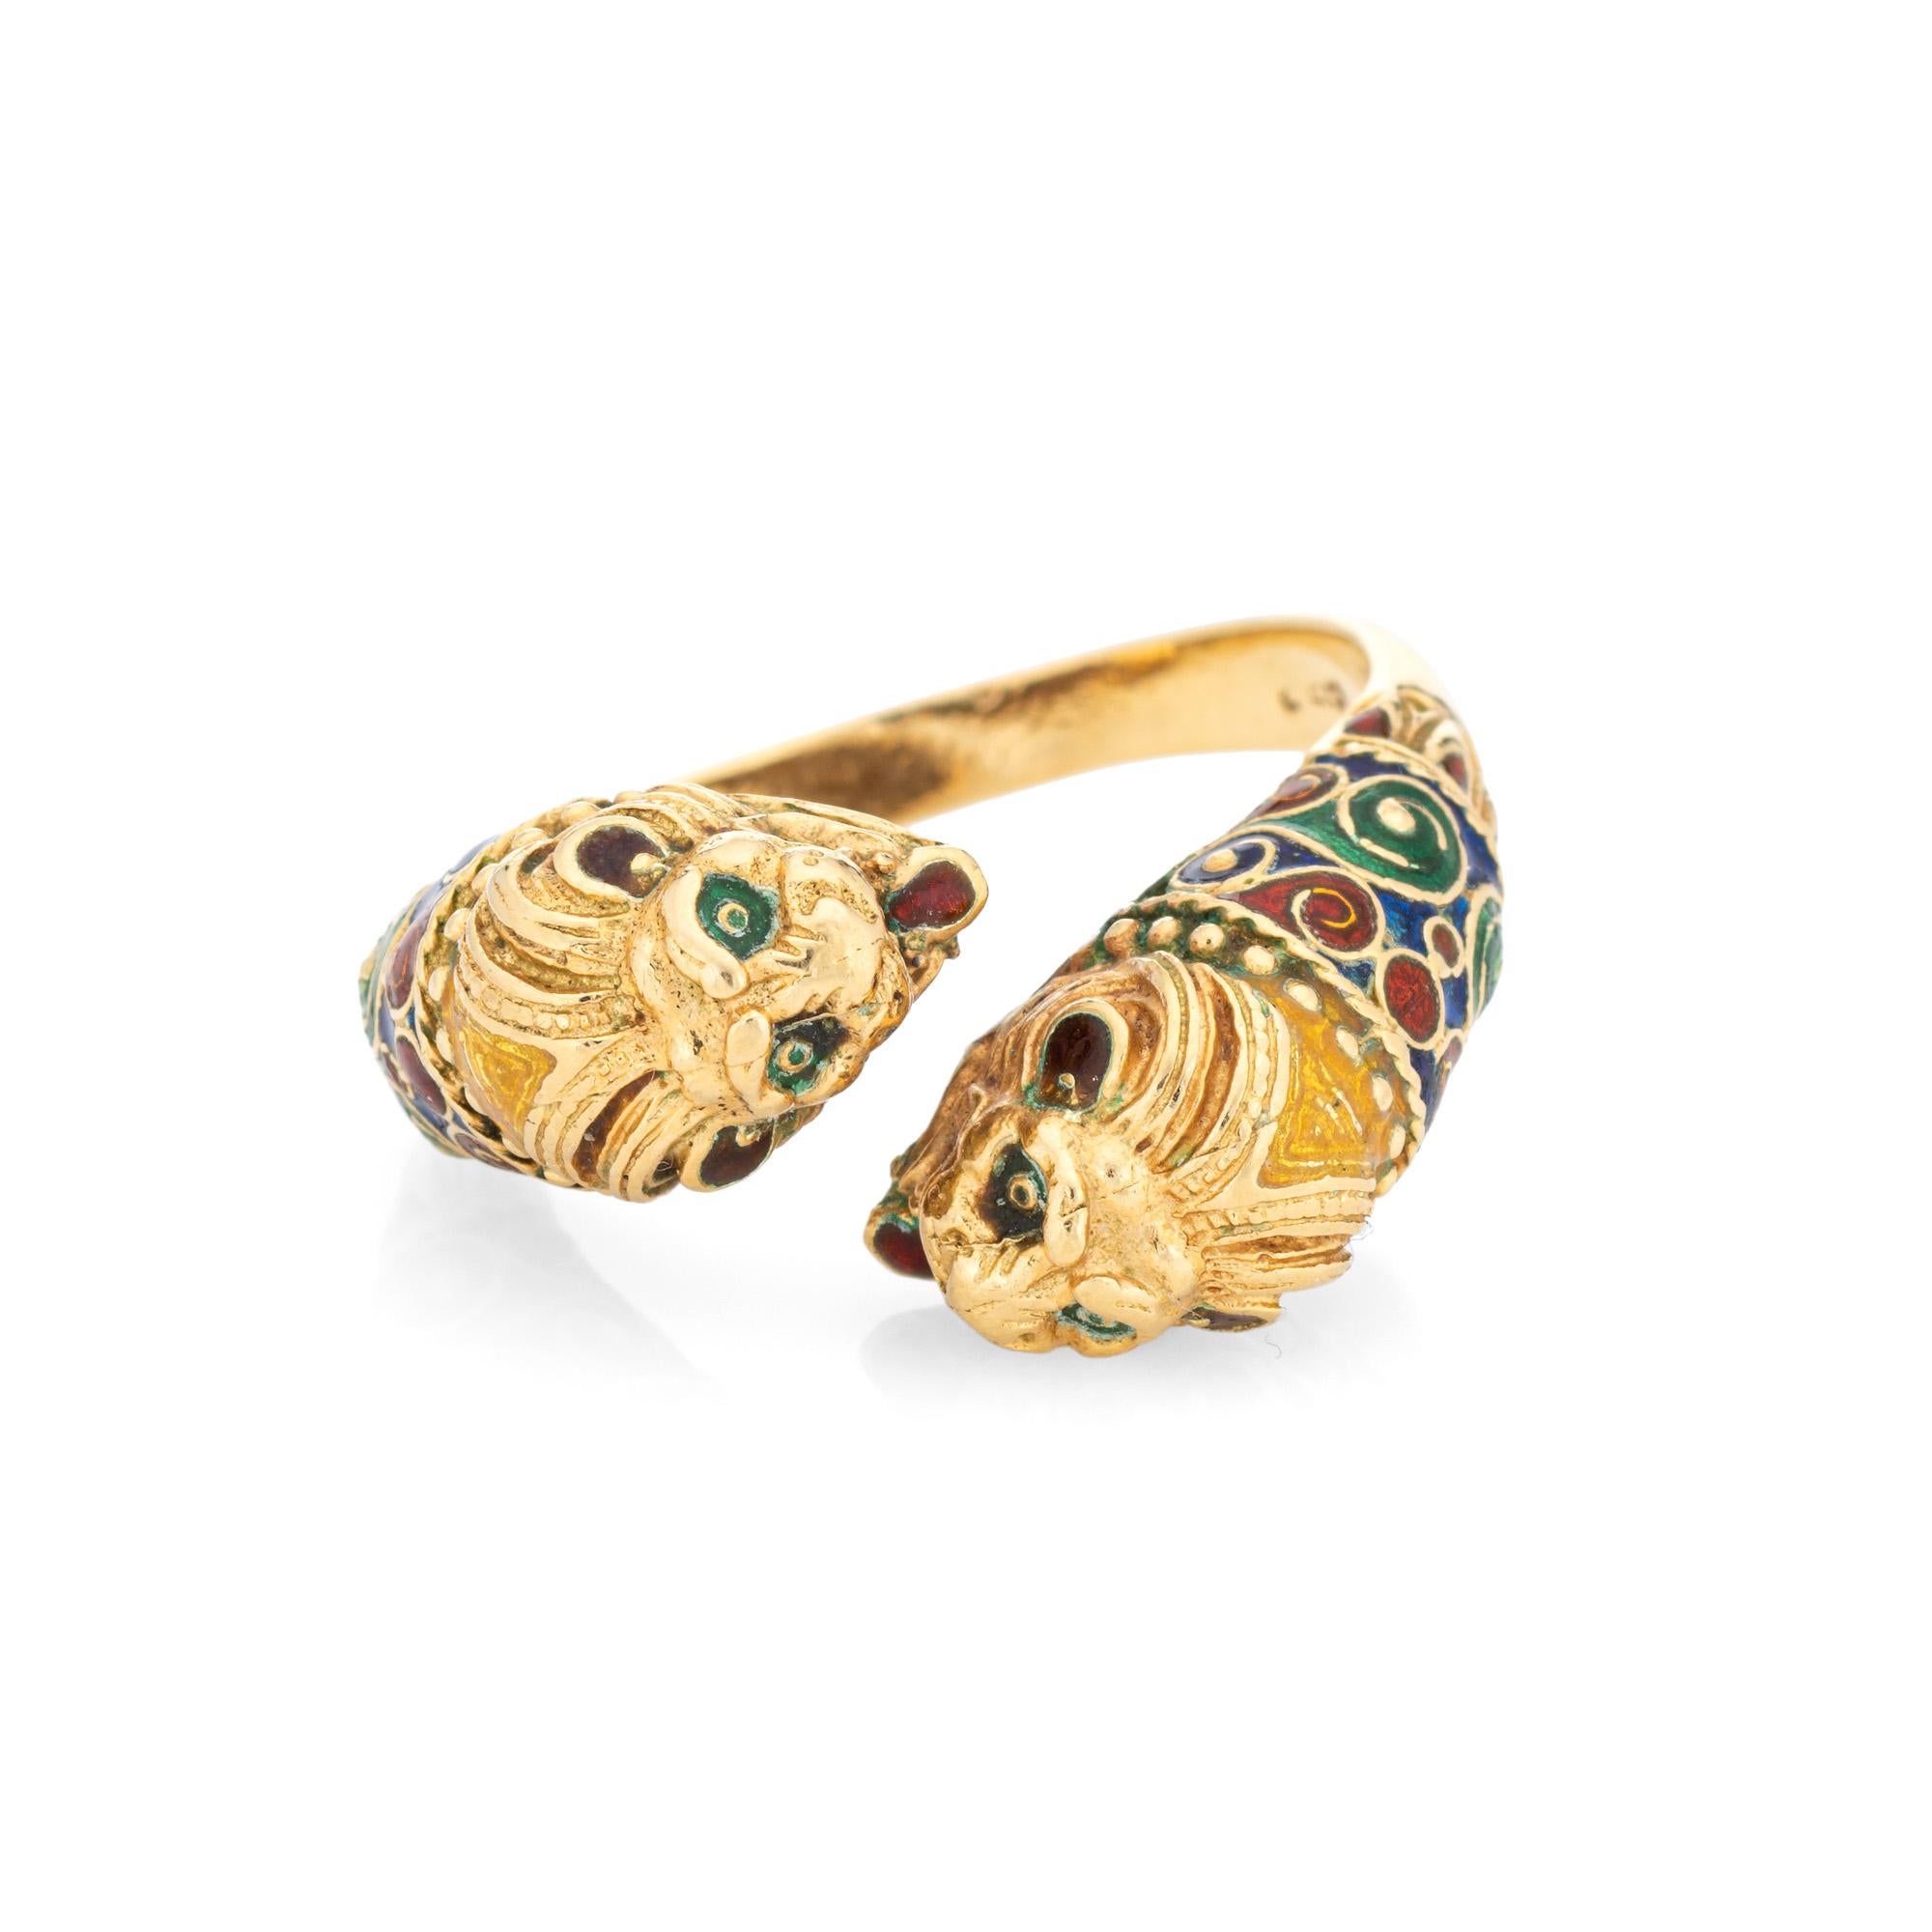 Stilvoller Ring mit doppeltem Löwen aus 18 Karat Gelbgold (ca. 1980er Jahre). 

Der aufwendige doppelte Löwe verfügt über einen blau, grün und orange emaillierten gemusterten Körper, der doppelköpfige Löwe Bypass-Design macht eine große Aussage auf